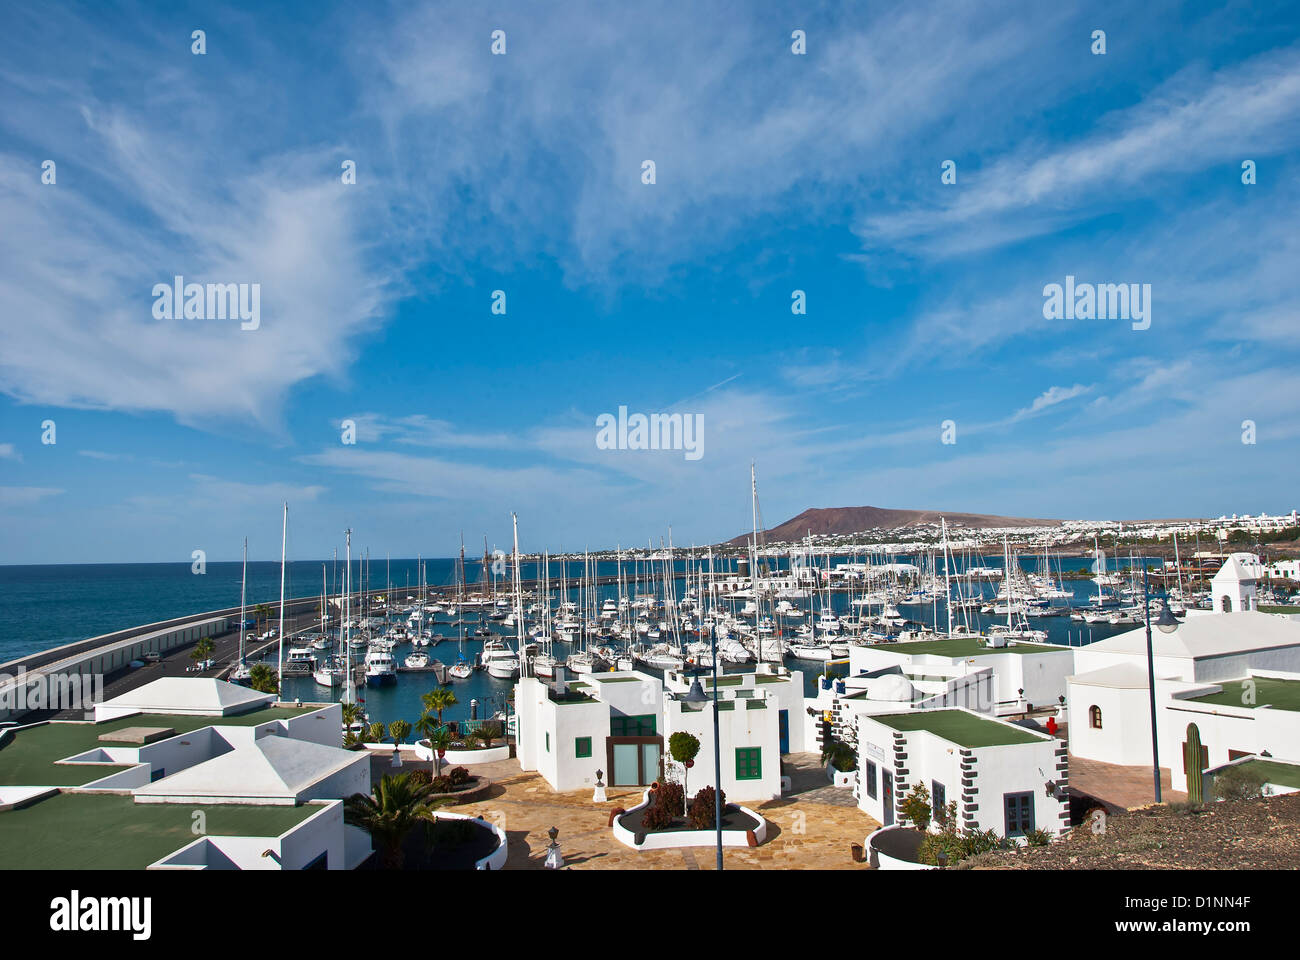 Una vista de la marina de yates y el resort de Playa Blanca, Lanzarote, Islas Canarias Foto de stock